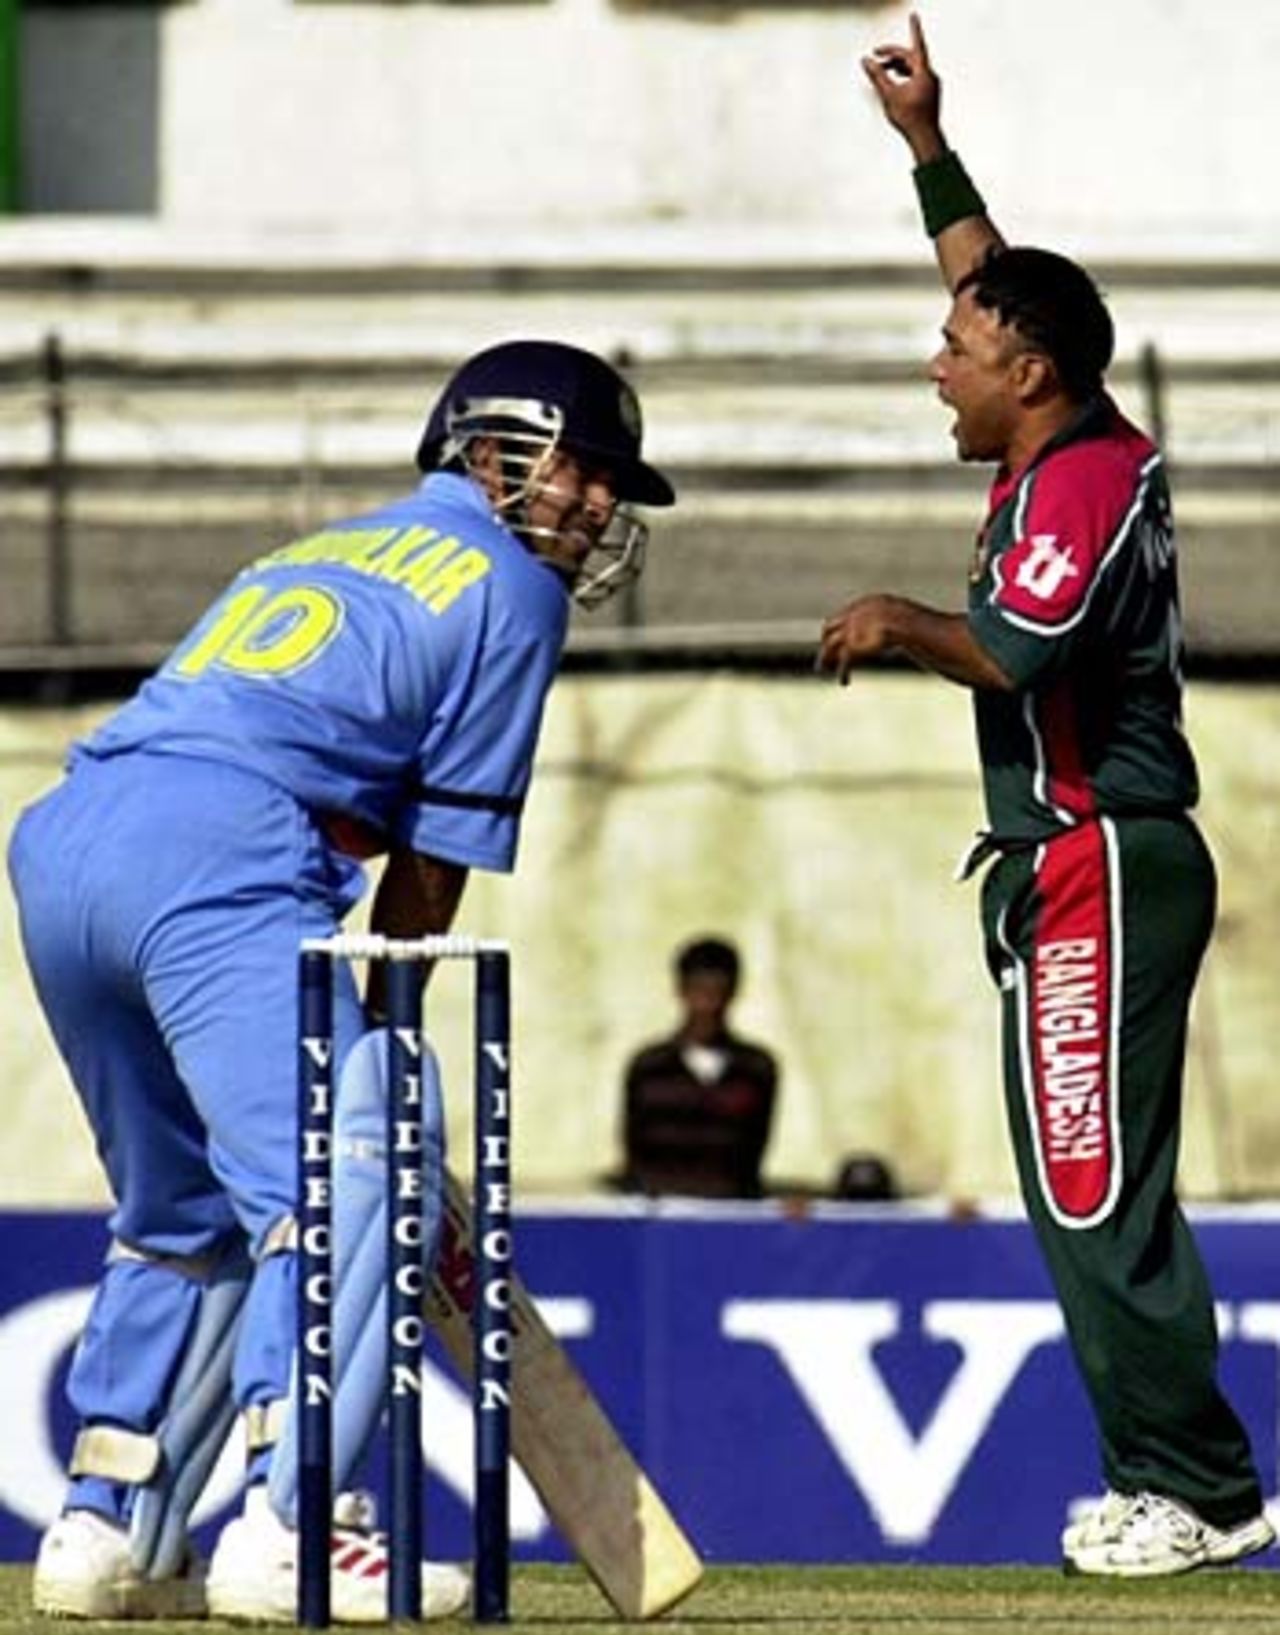 Khaled Mahmud celebrates dismissing Sachin Tendulkar, Bangladesh v India, 3rd ODI, Dhaka, December 27, 2004